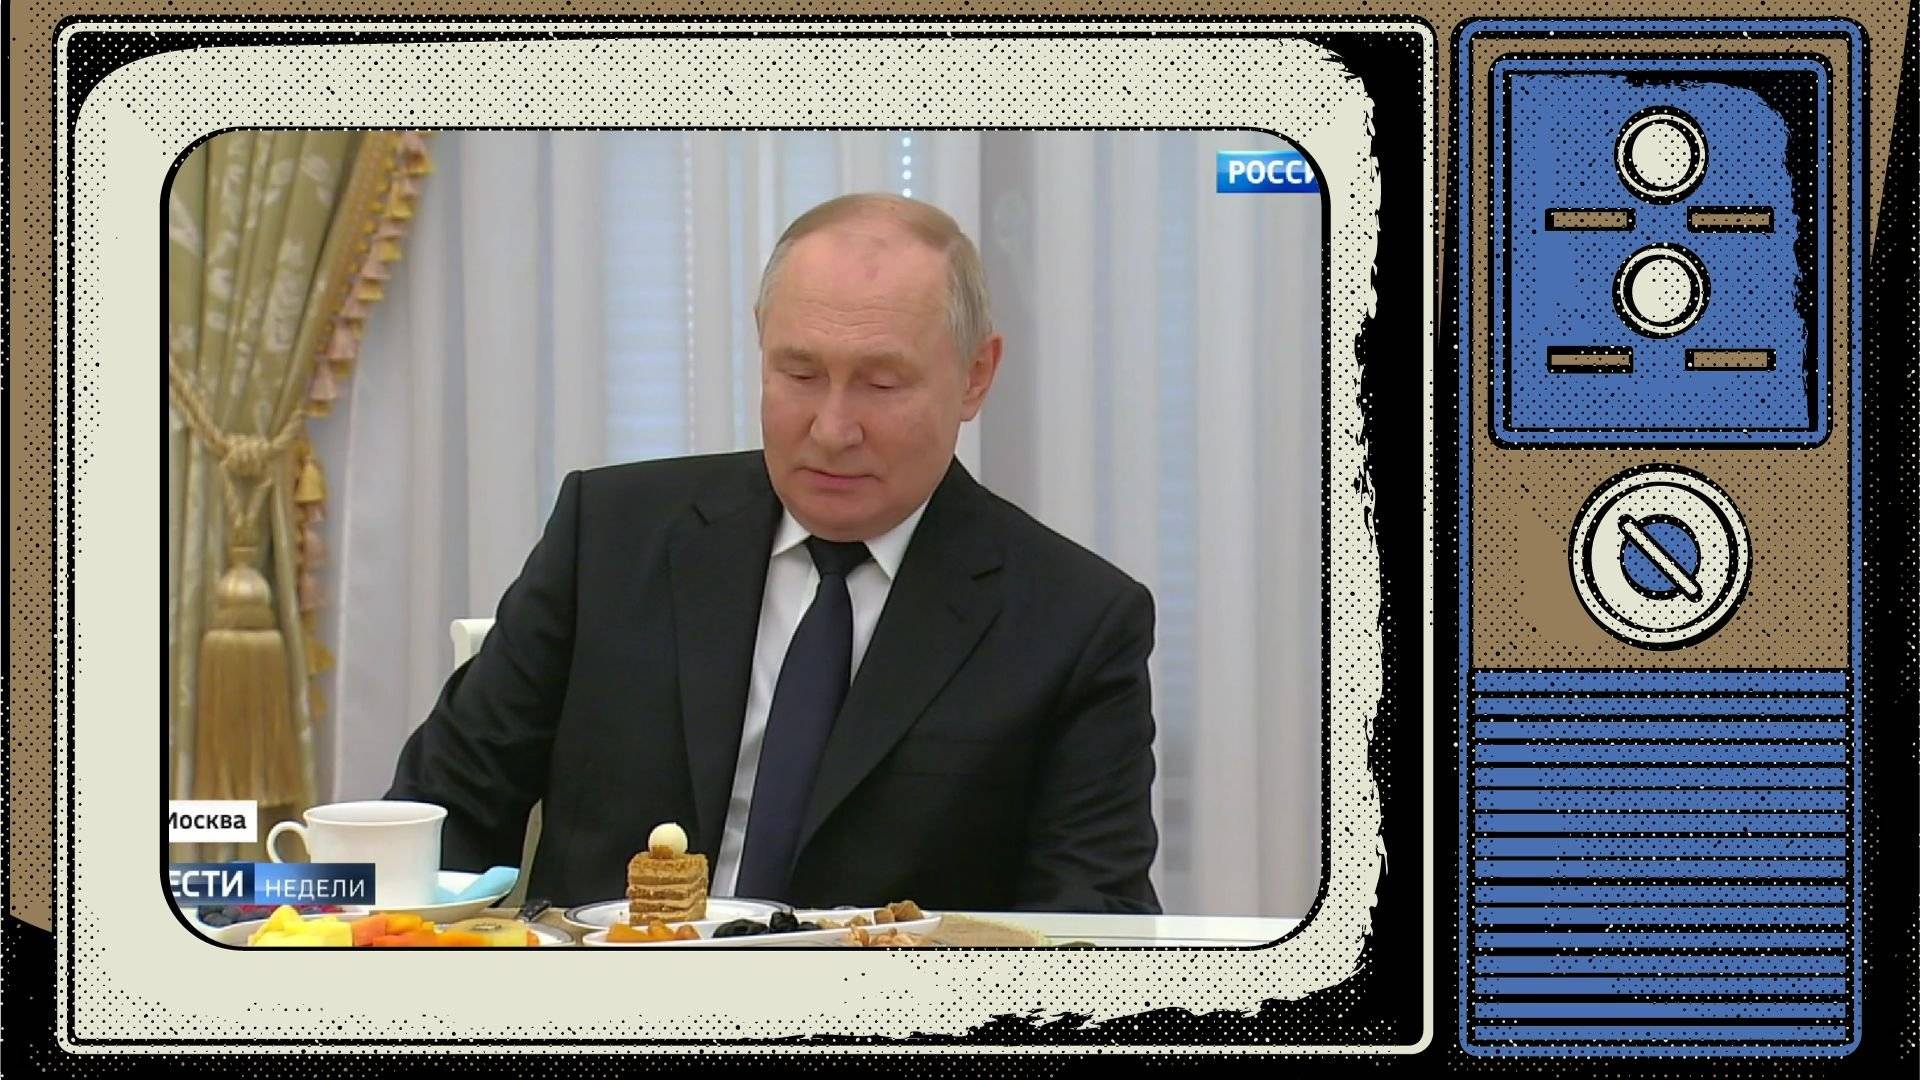 Grafika. W ramie starego telewizora screen z Putinem i ciastkiem z kremem